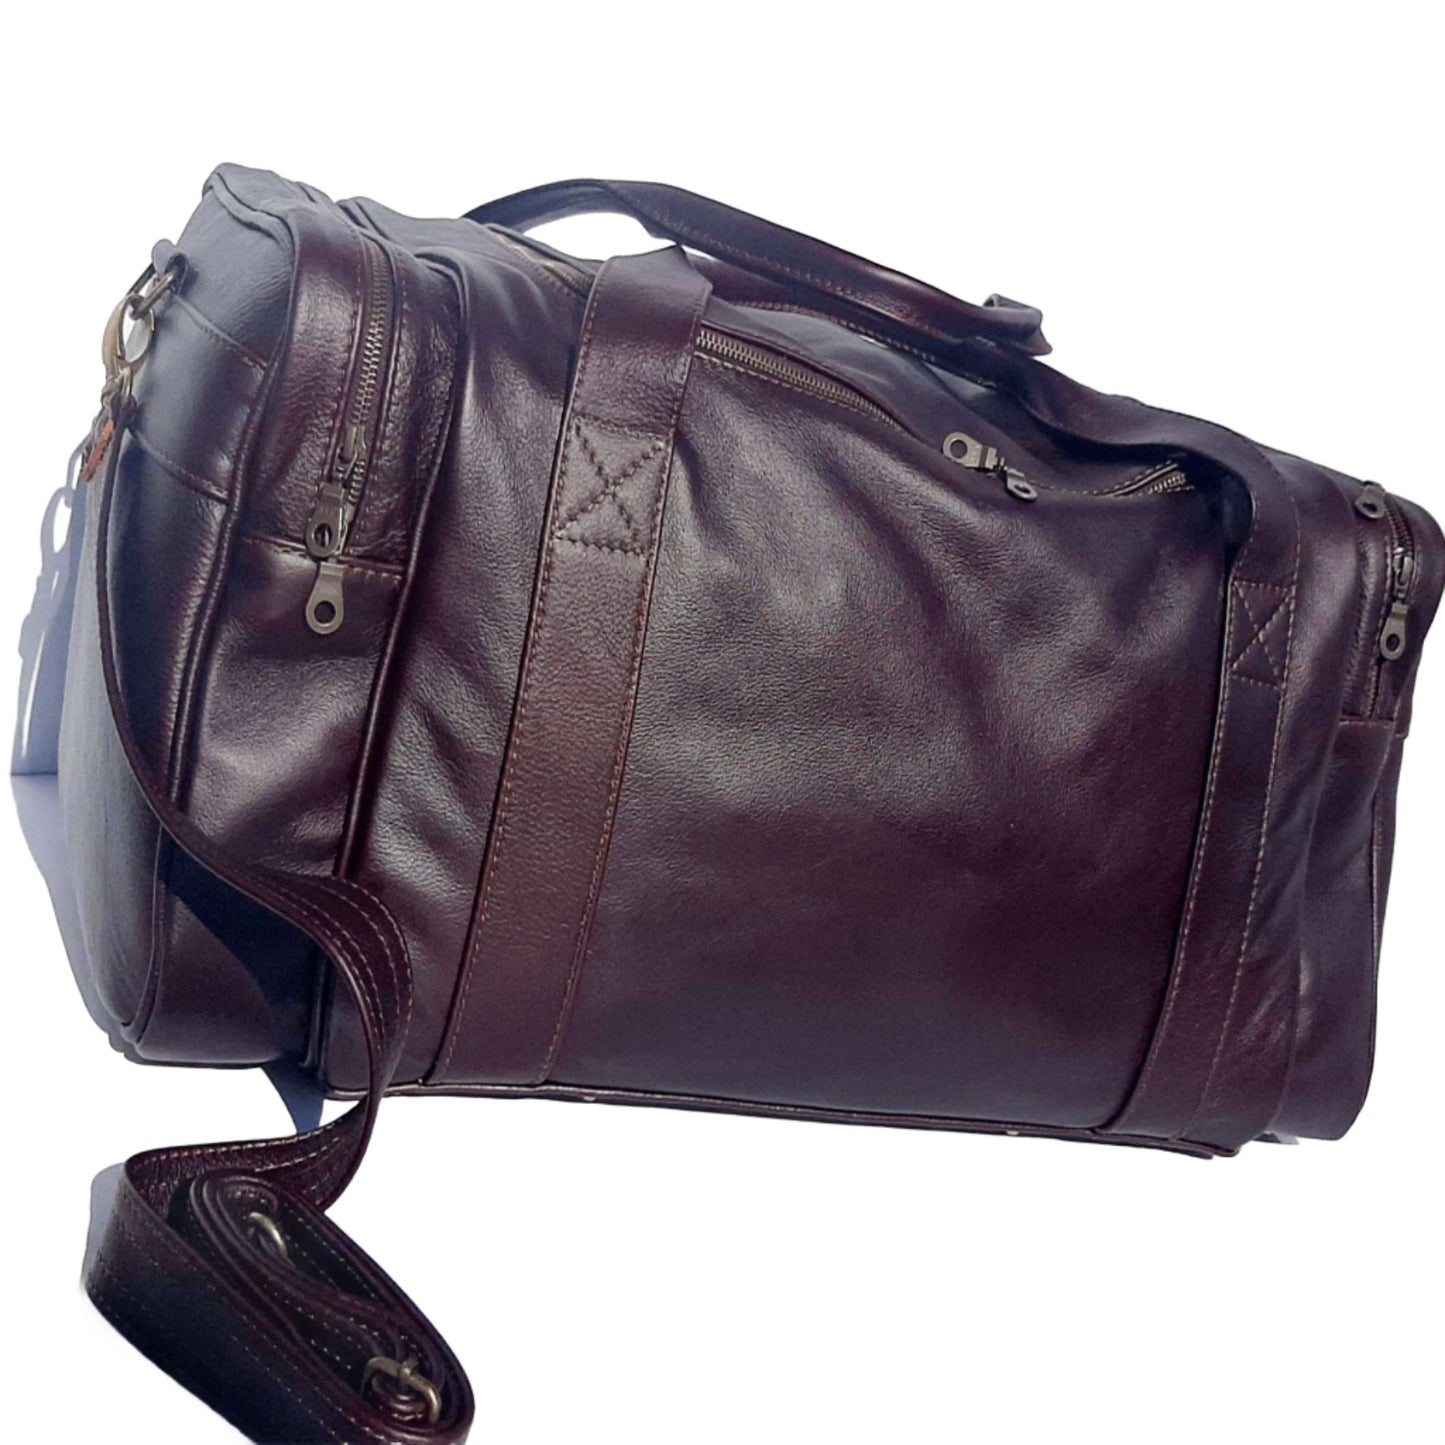  Masai Luggage Bags, the finest SA travel bag in dark tan colour